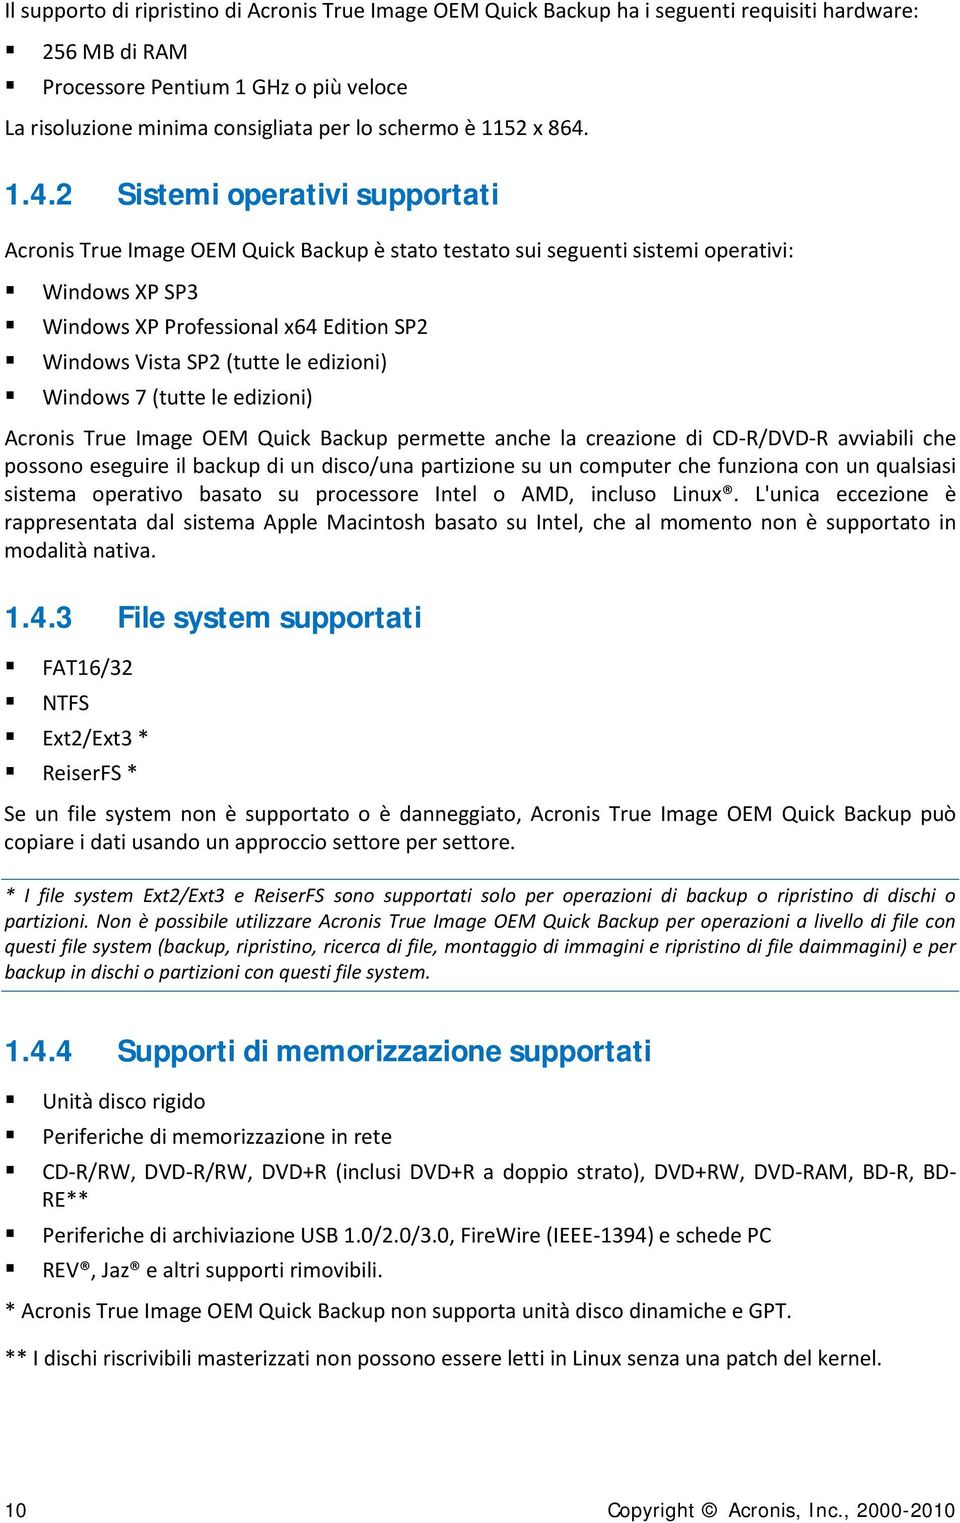 1.4.2 Sistemi operativi supportati Acronis True Image OEM Quick Backup è stato testato sui seguenti sistemi operativi: Windows XP SP3 Windows XP Professional x64 Edition SP2 Windows Vista SP2 (tutte